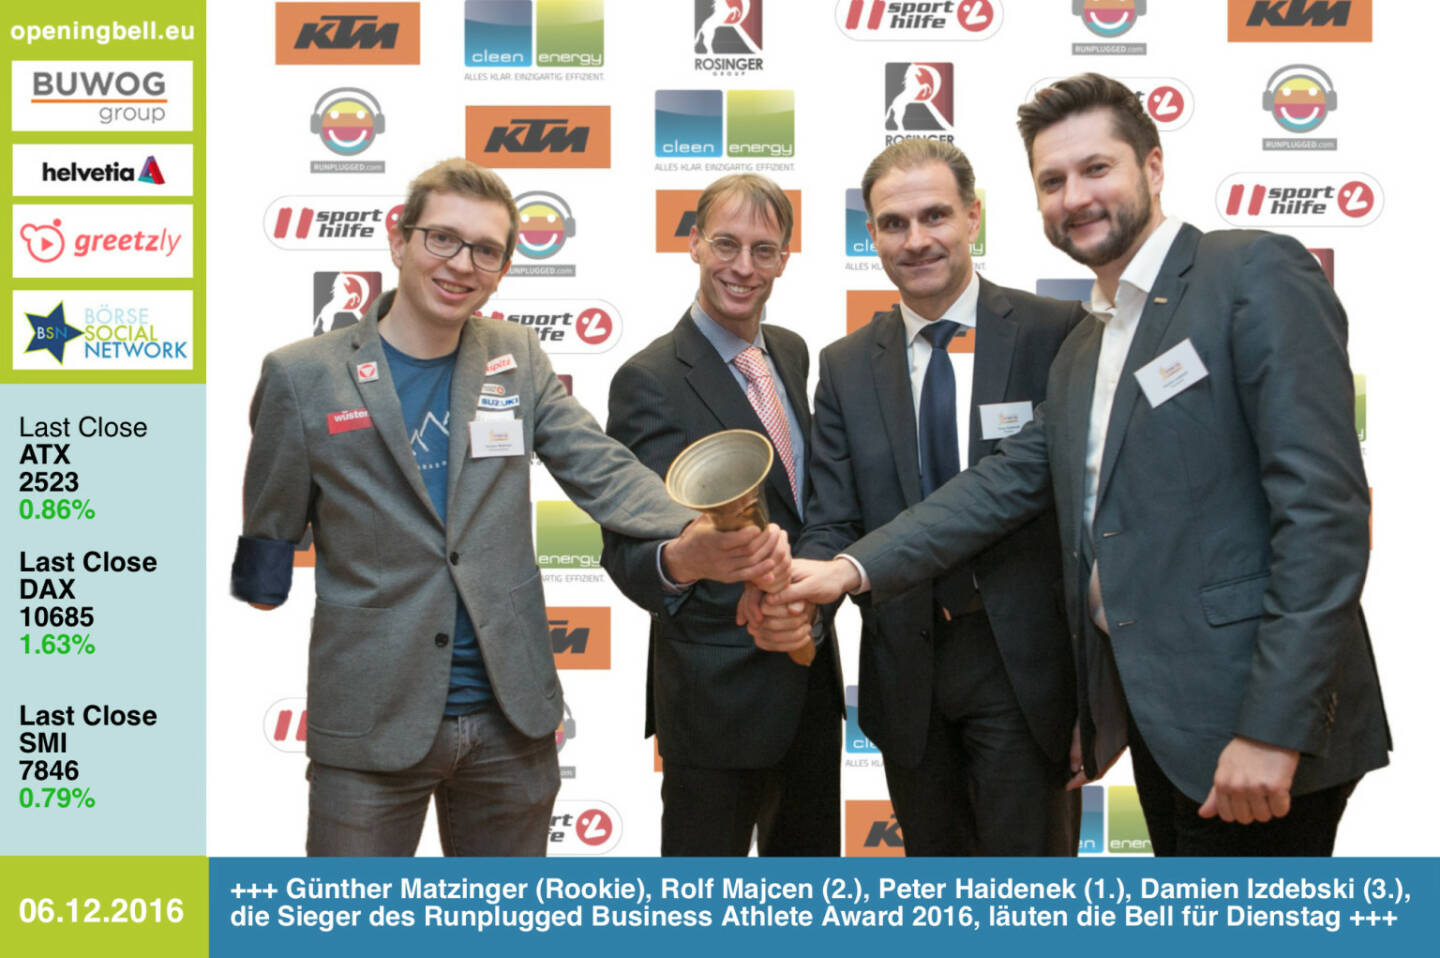 #openingbell am 6.12.: Günther Matzinger (Rookie), Rolf Majcen (2.), Peter Haidenek (1.) und Damian Izdebski (3.), die Sieger des Runplugged Business Athlete Award 2016, läuten die Bell für Dienstag http://www.runplugged.com/baa http://runplugged.com/2016/12/06/business_athlete_award_2016_peter_haidenek_siegt#bild_59130 